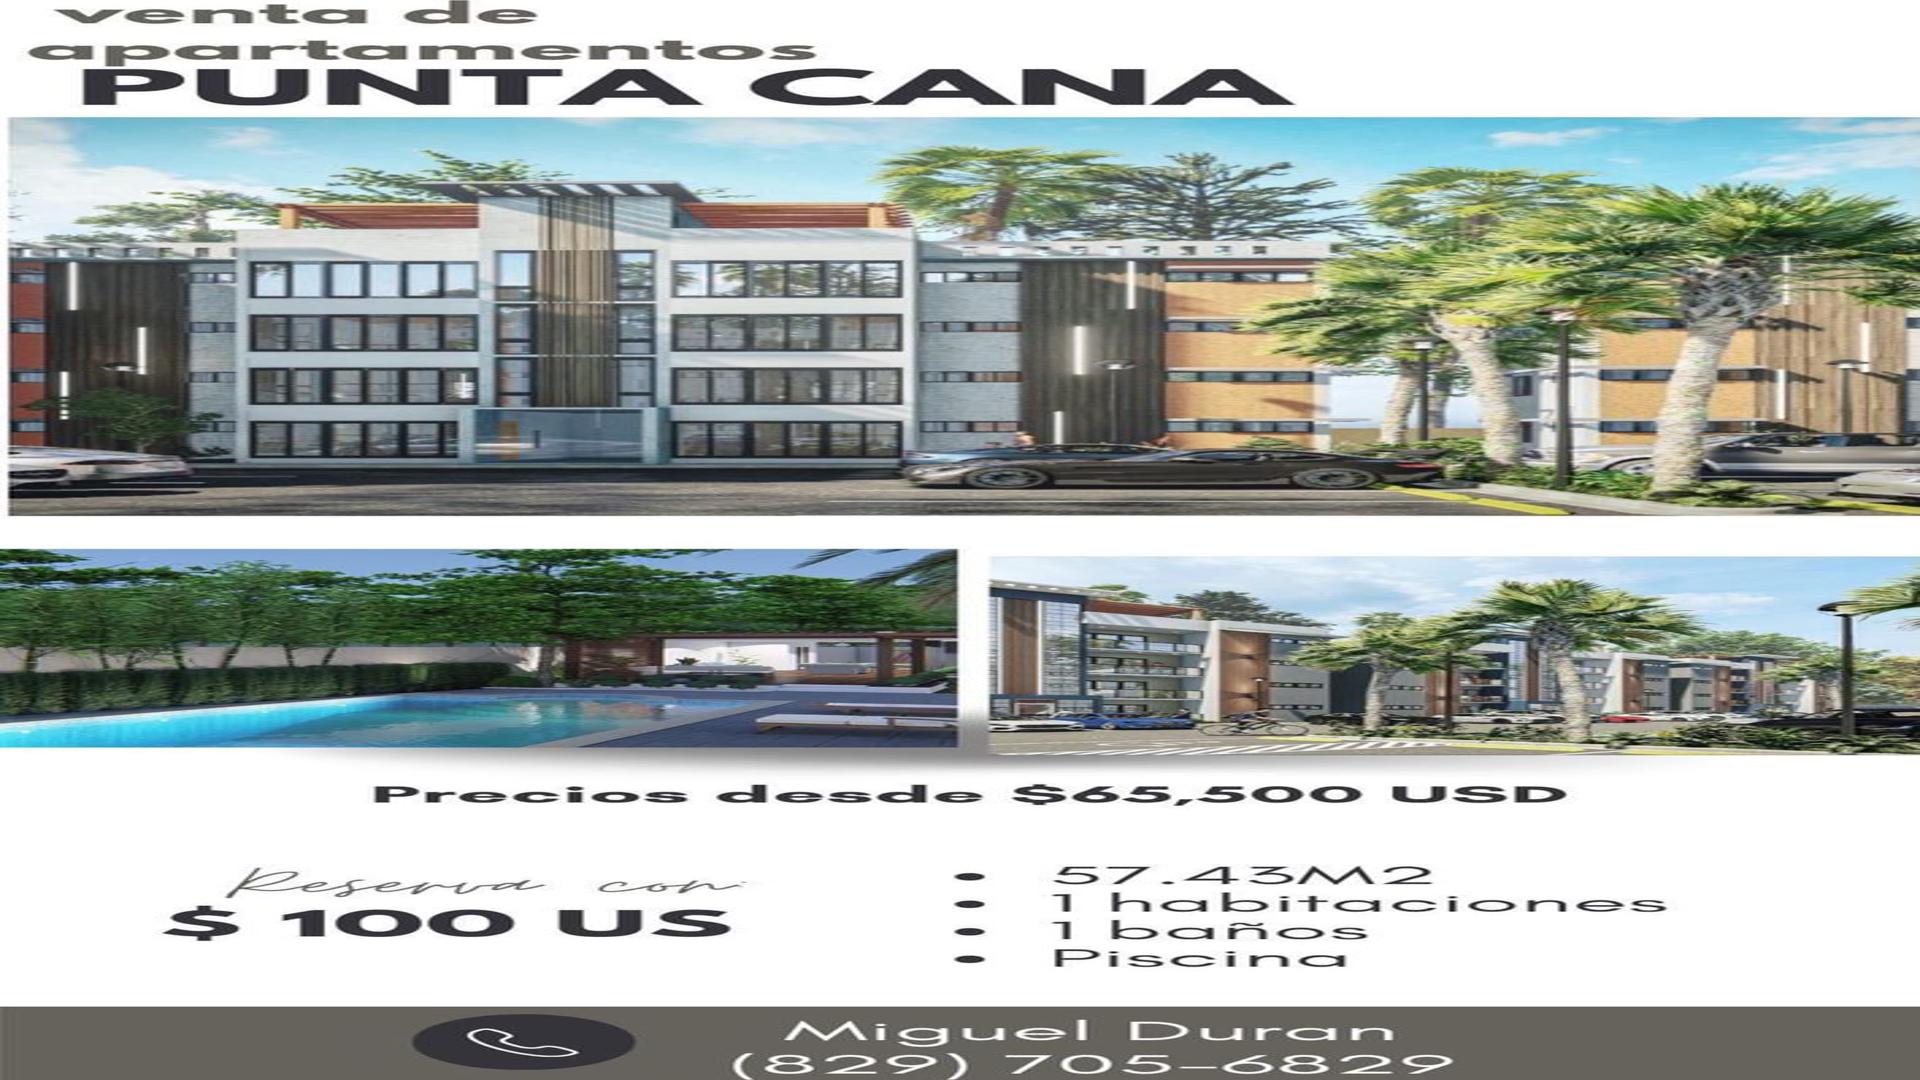 apartamentos - Venta de apartamentos en punta cana Republica Dominicana 1